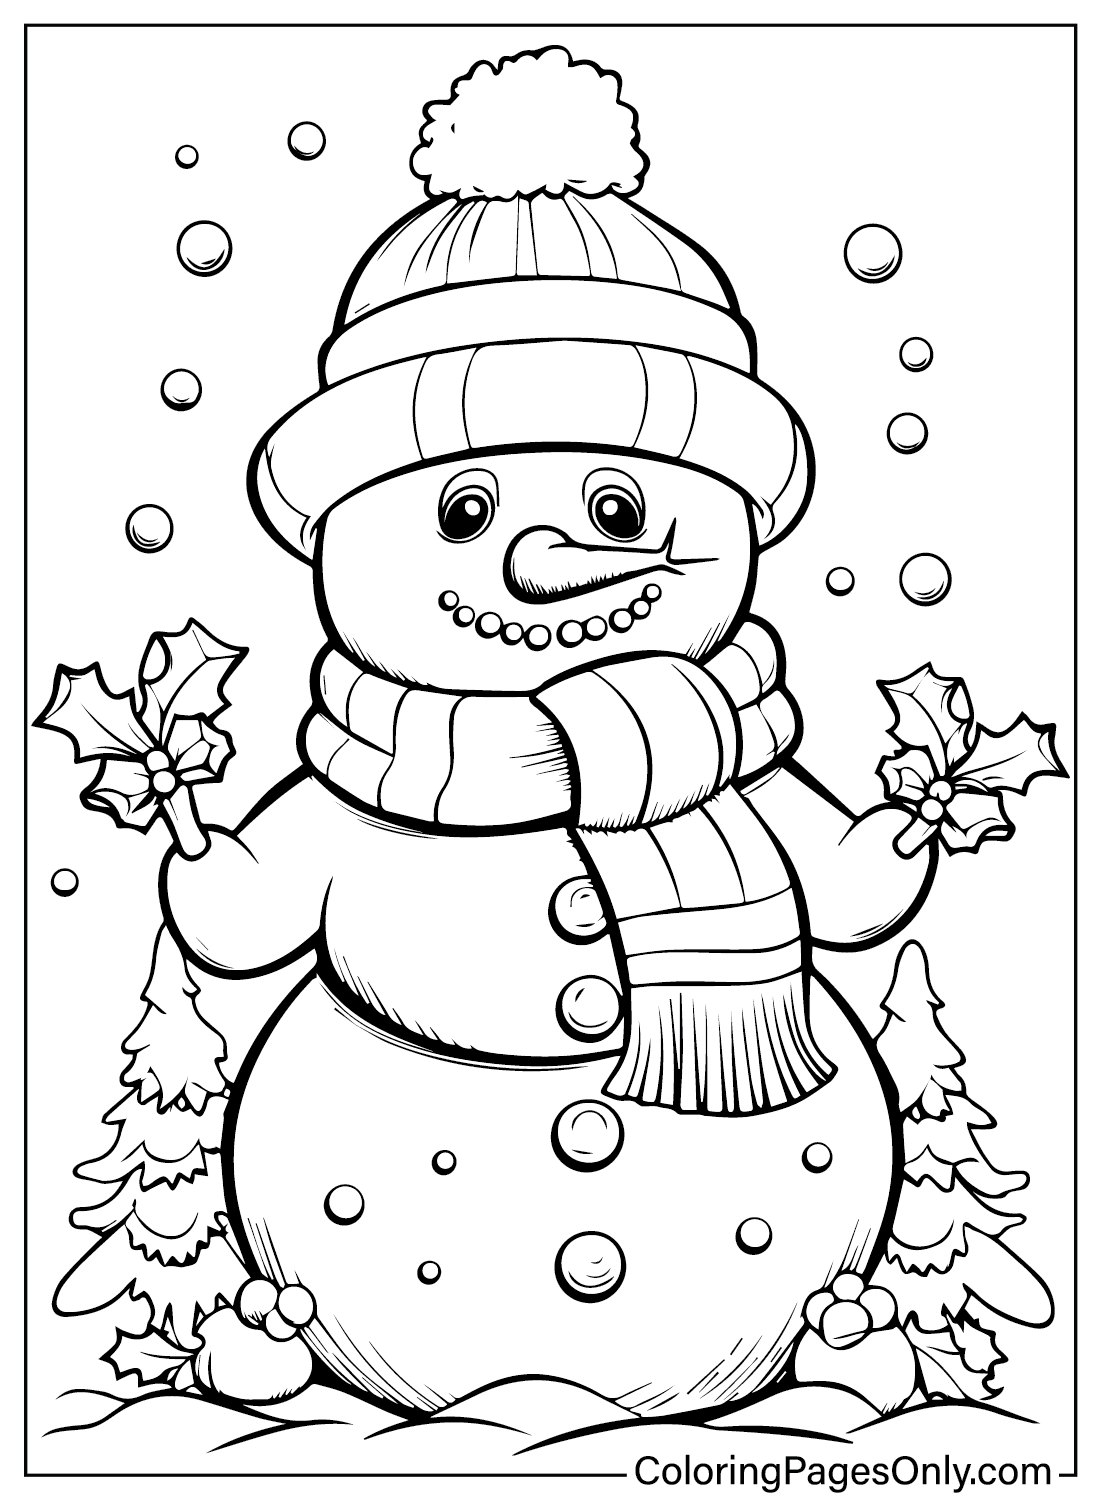 Pagina da colorare gratuita del pupazzo di neve da dicembre